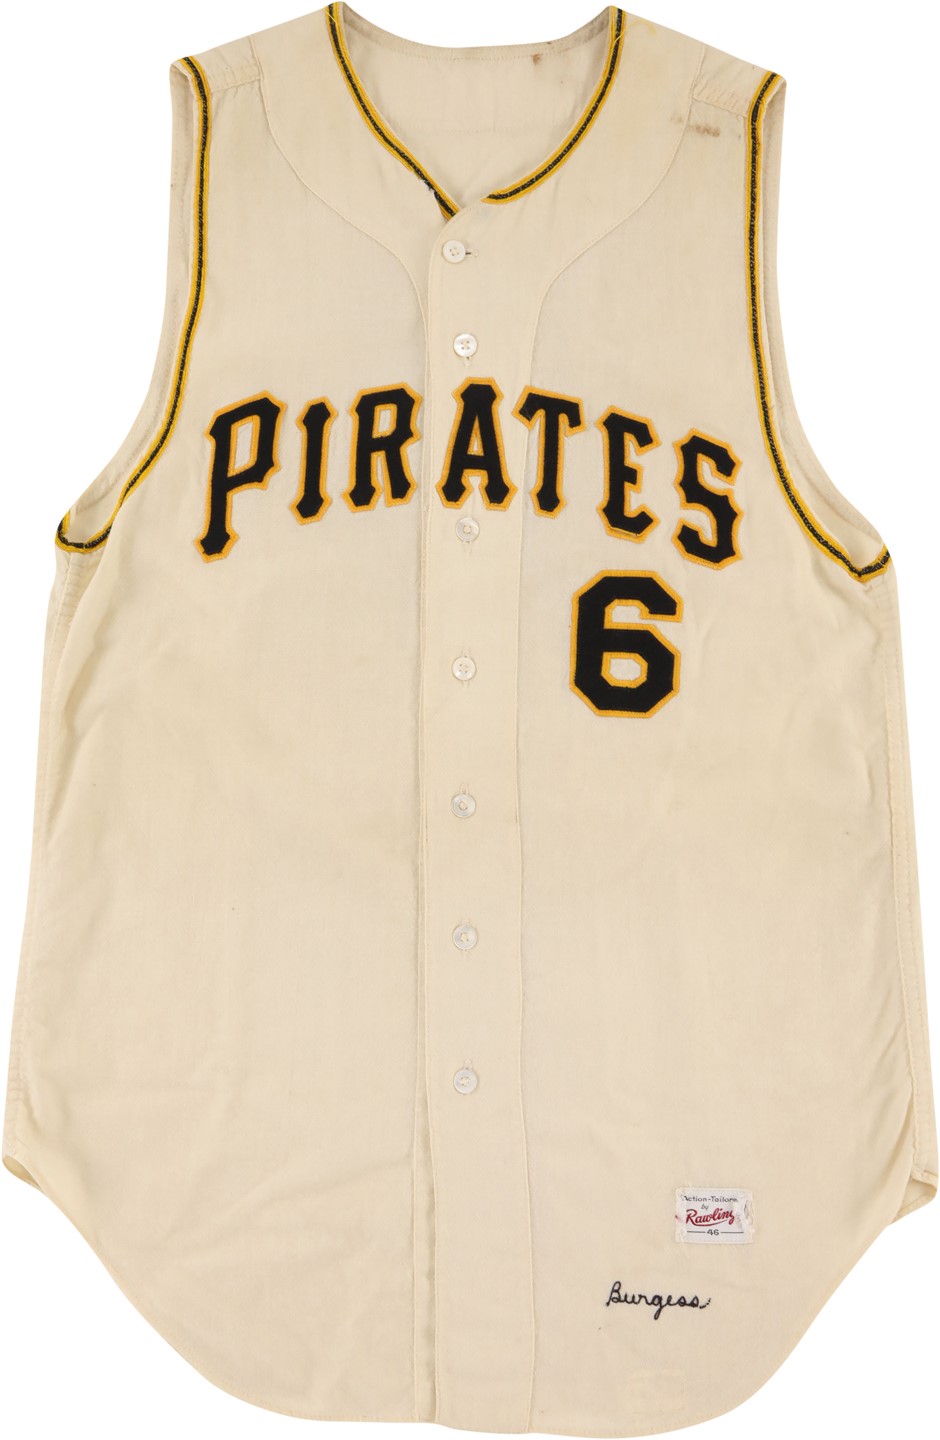 - 1962 Smoky Burgess Pittsburgh Pirates Game Worn Jersey